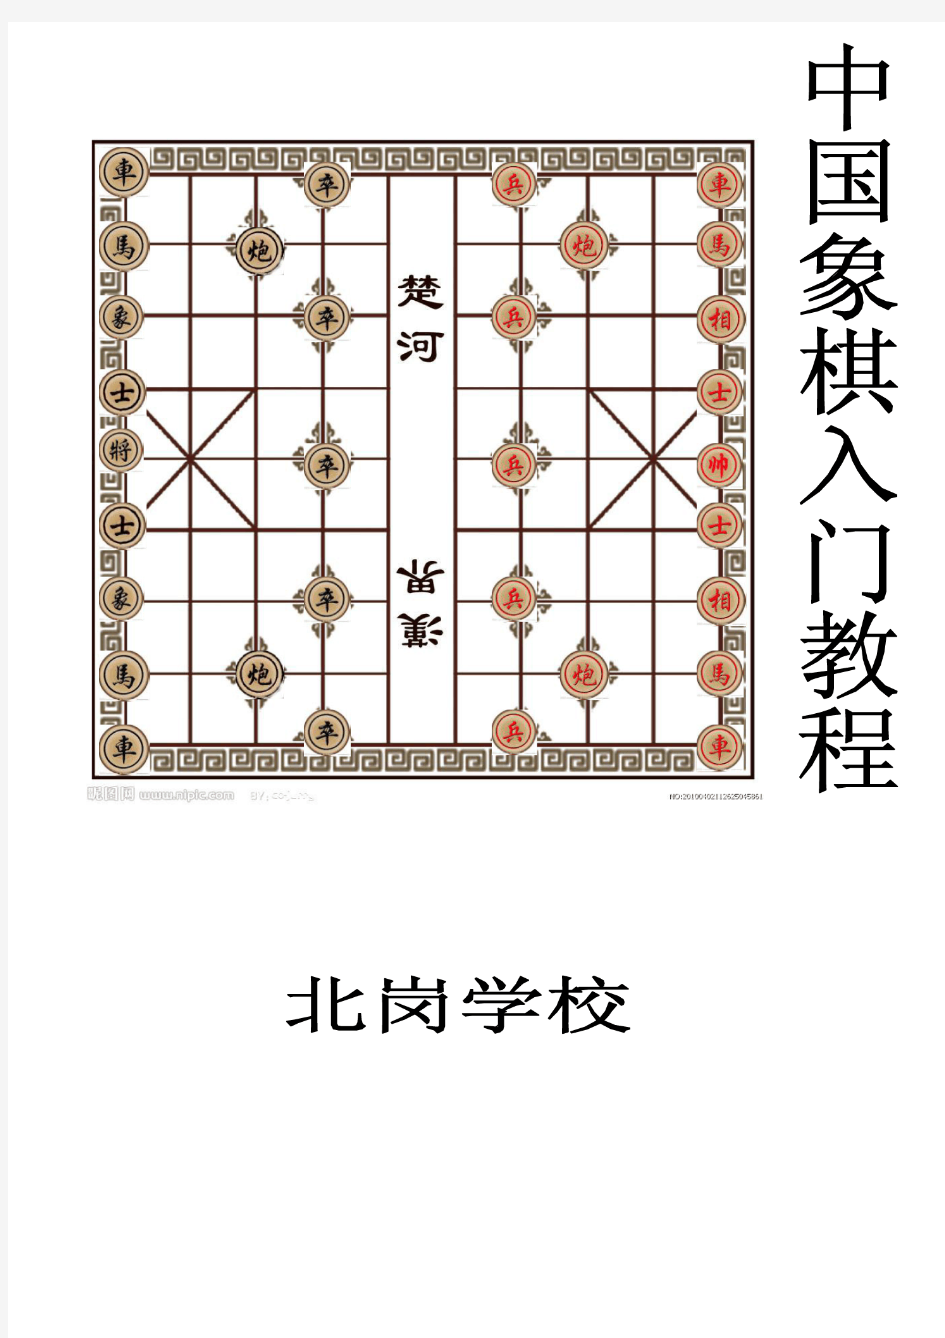 中国象棋入门教程1